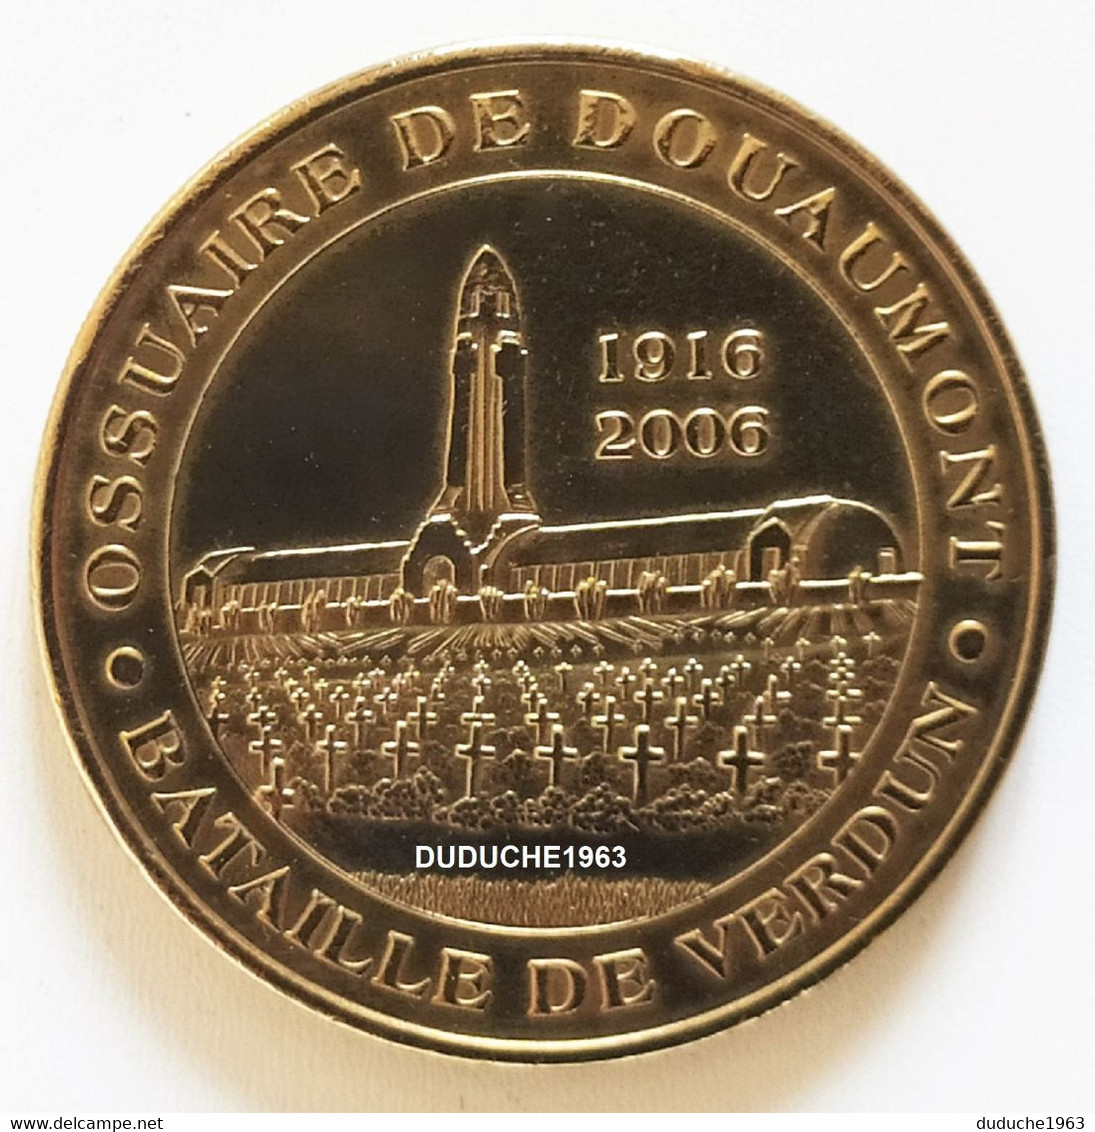 Monnaie De Paris 55.Douaumont. Ossuaire 2 Bataille De Verdun 2005 - 2005